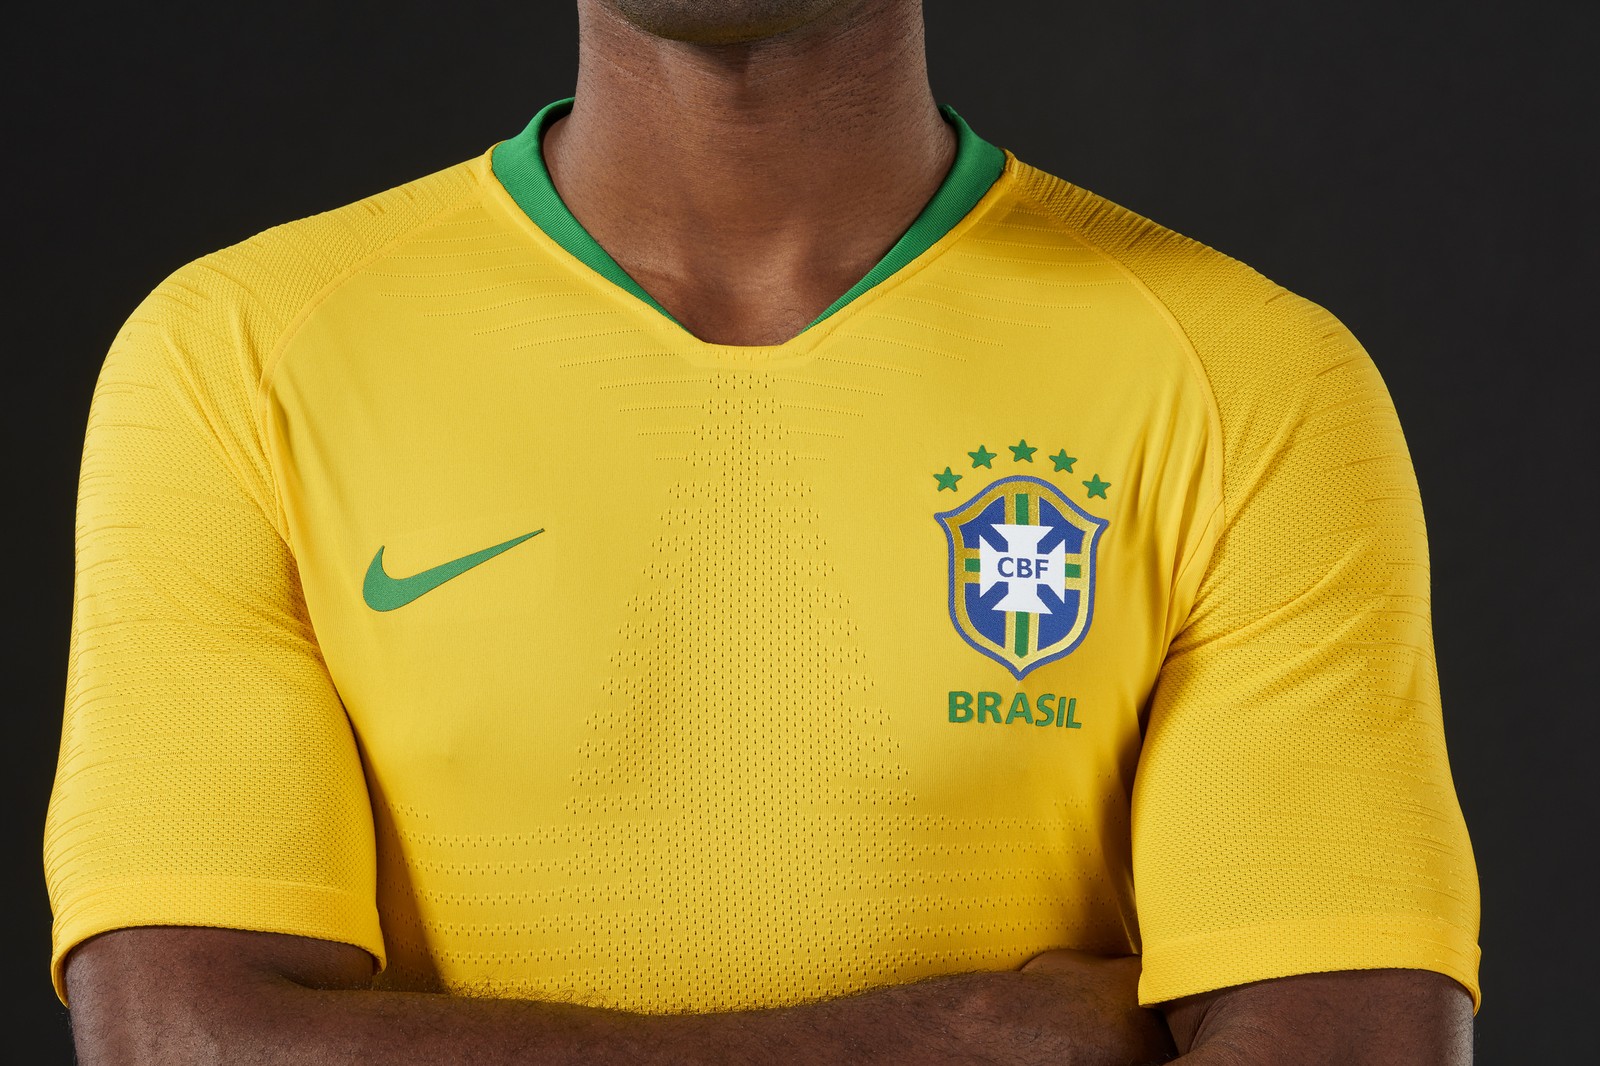 Uniforme oficial da seleção brasileira para a Copa do Mundo 2018